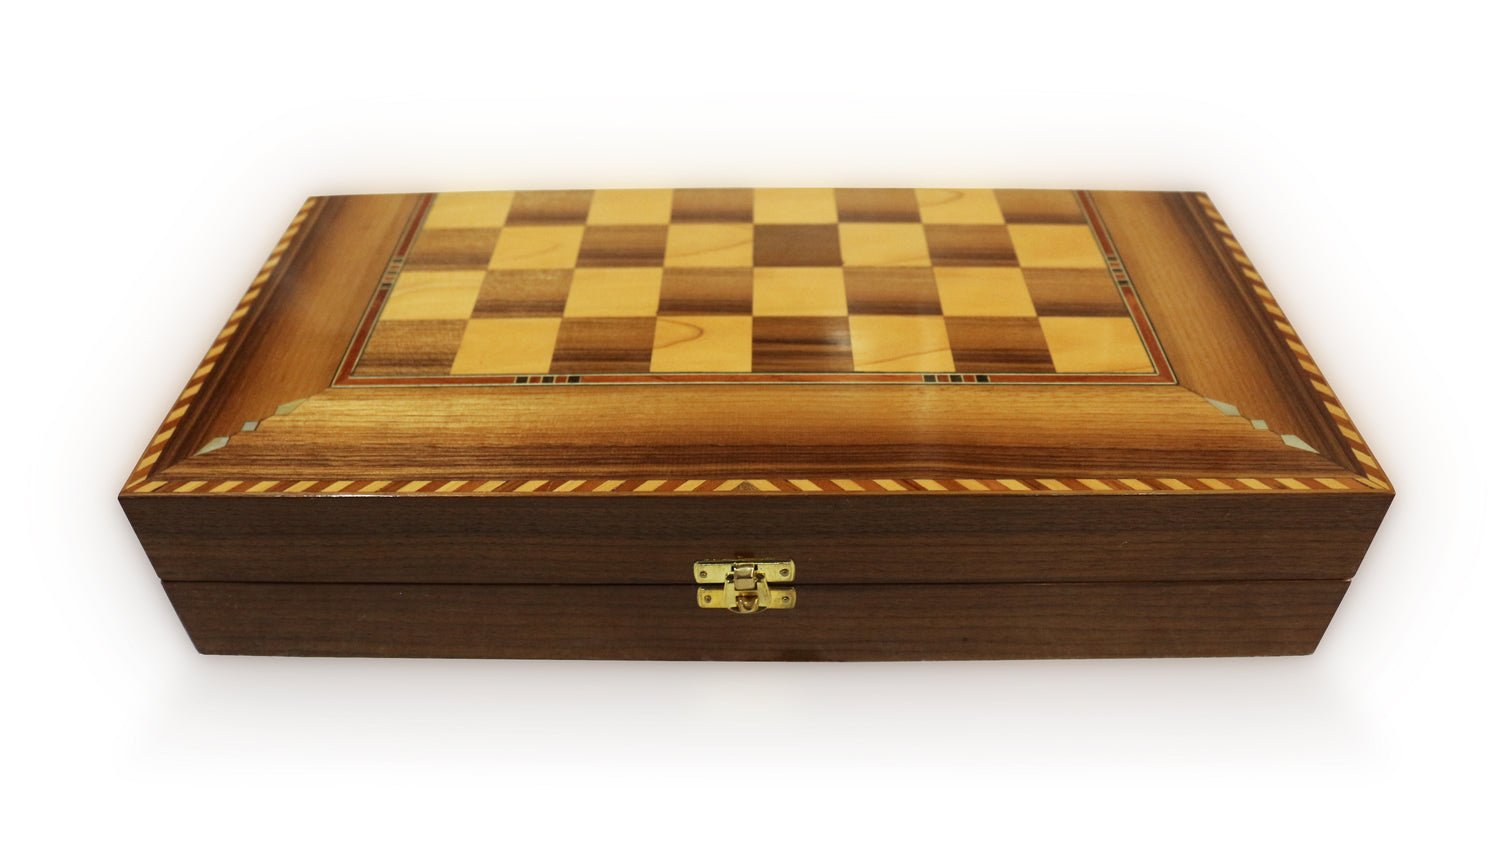 Neu 40 x 40 cm Holz Backgammon/Schachspiel/Dama Brett  K 6-1-40 mit 30 Holz Backgammon Steine - Damaskunst - [variant_title]-[option1]